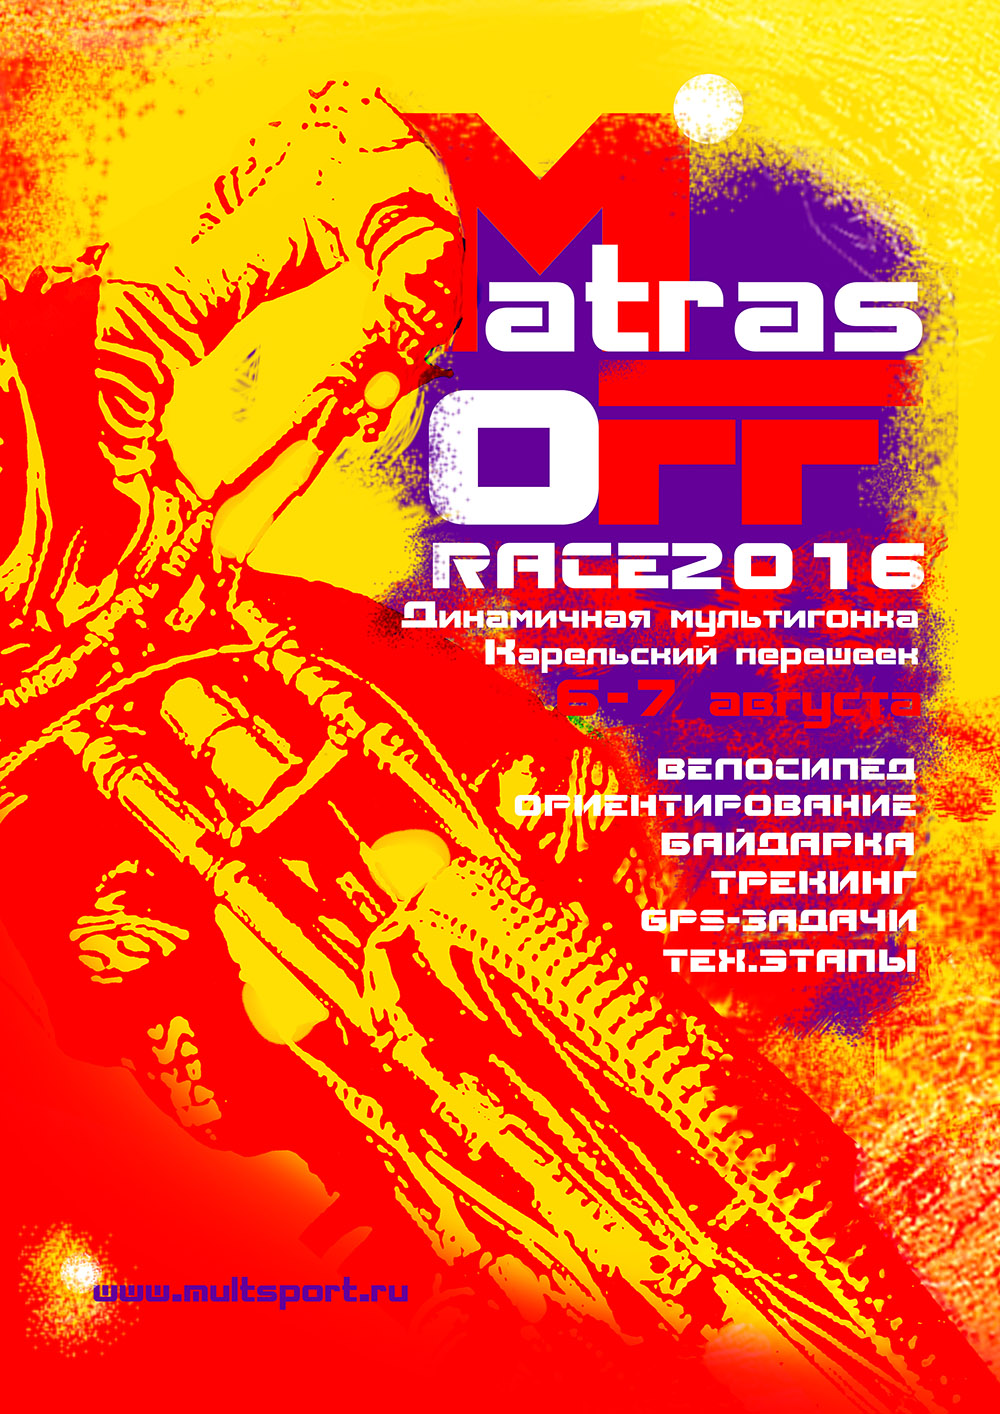 Техническая информация соревнования MatrasOFF Race - 2016